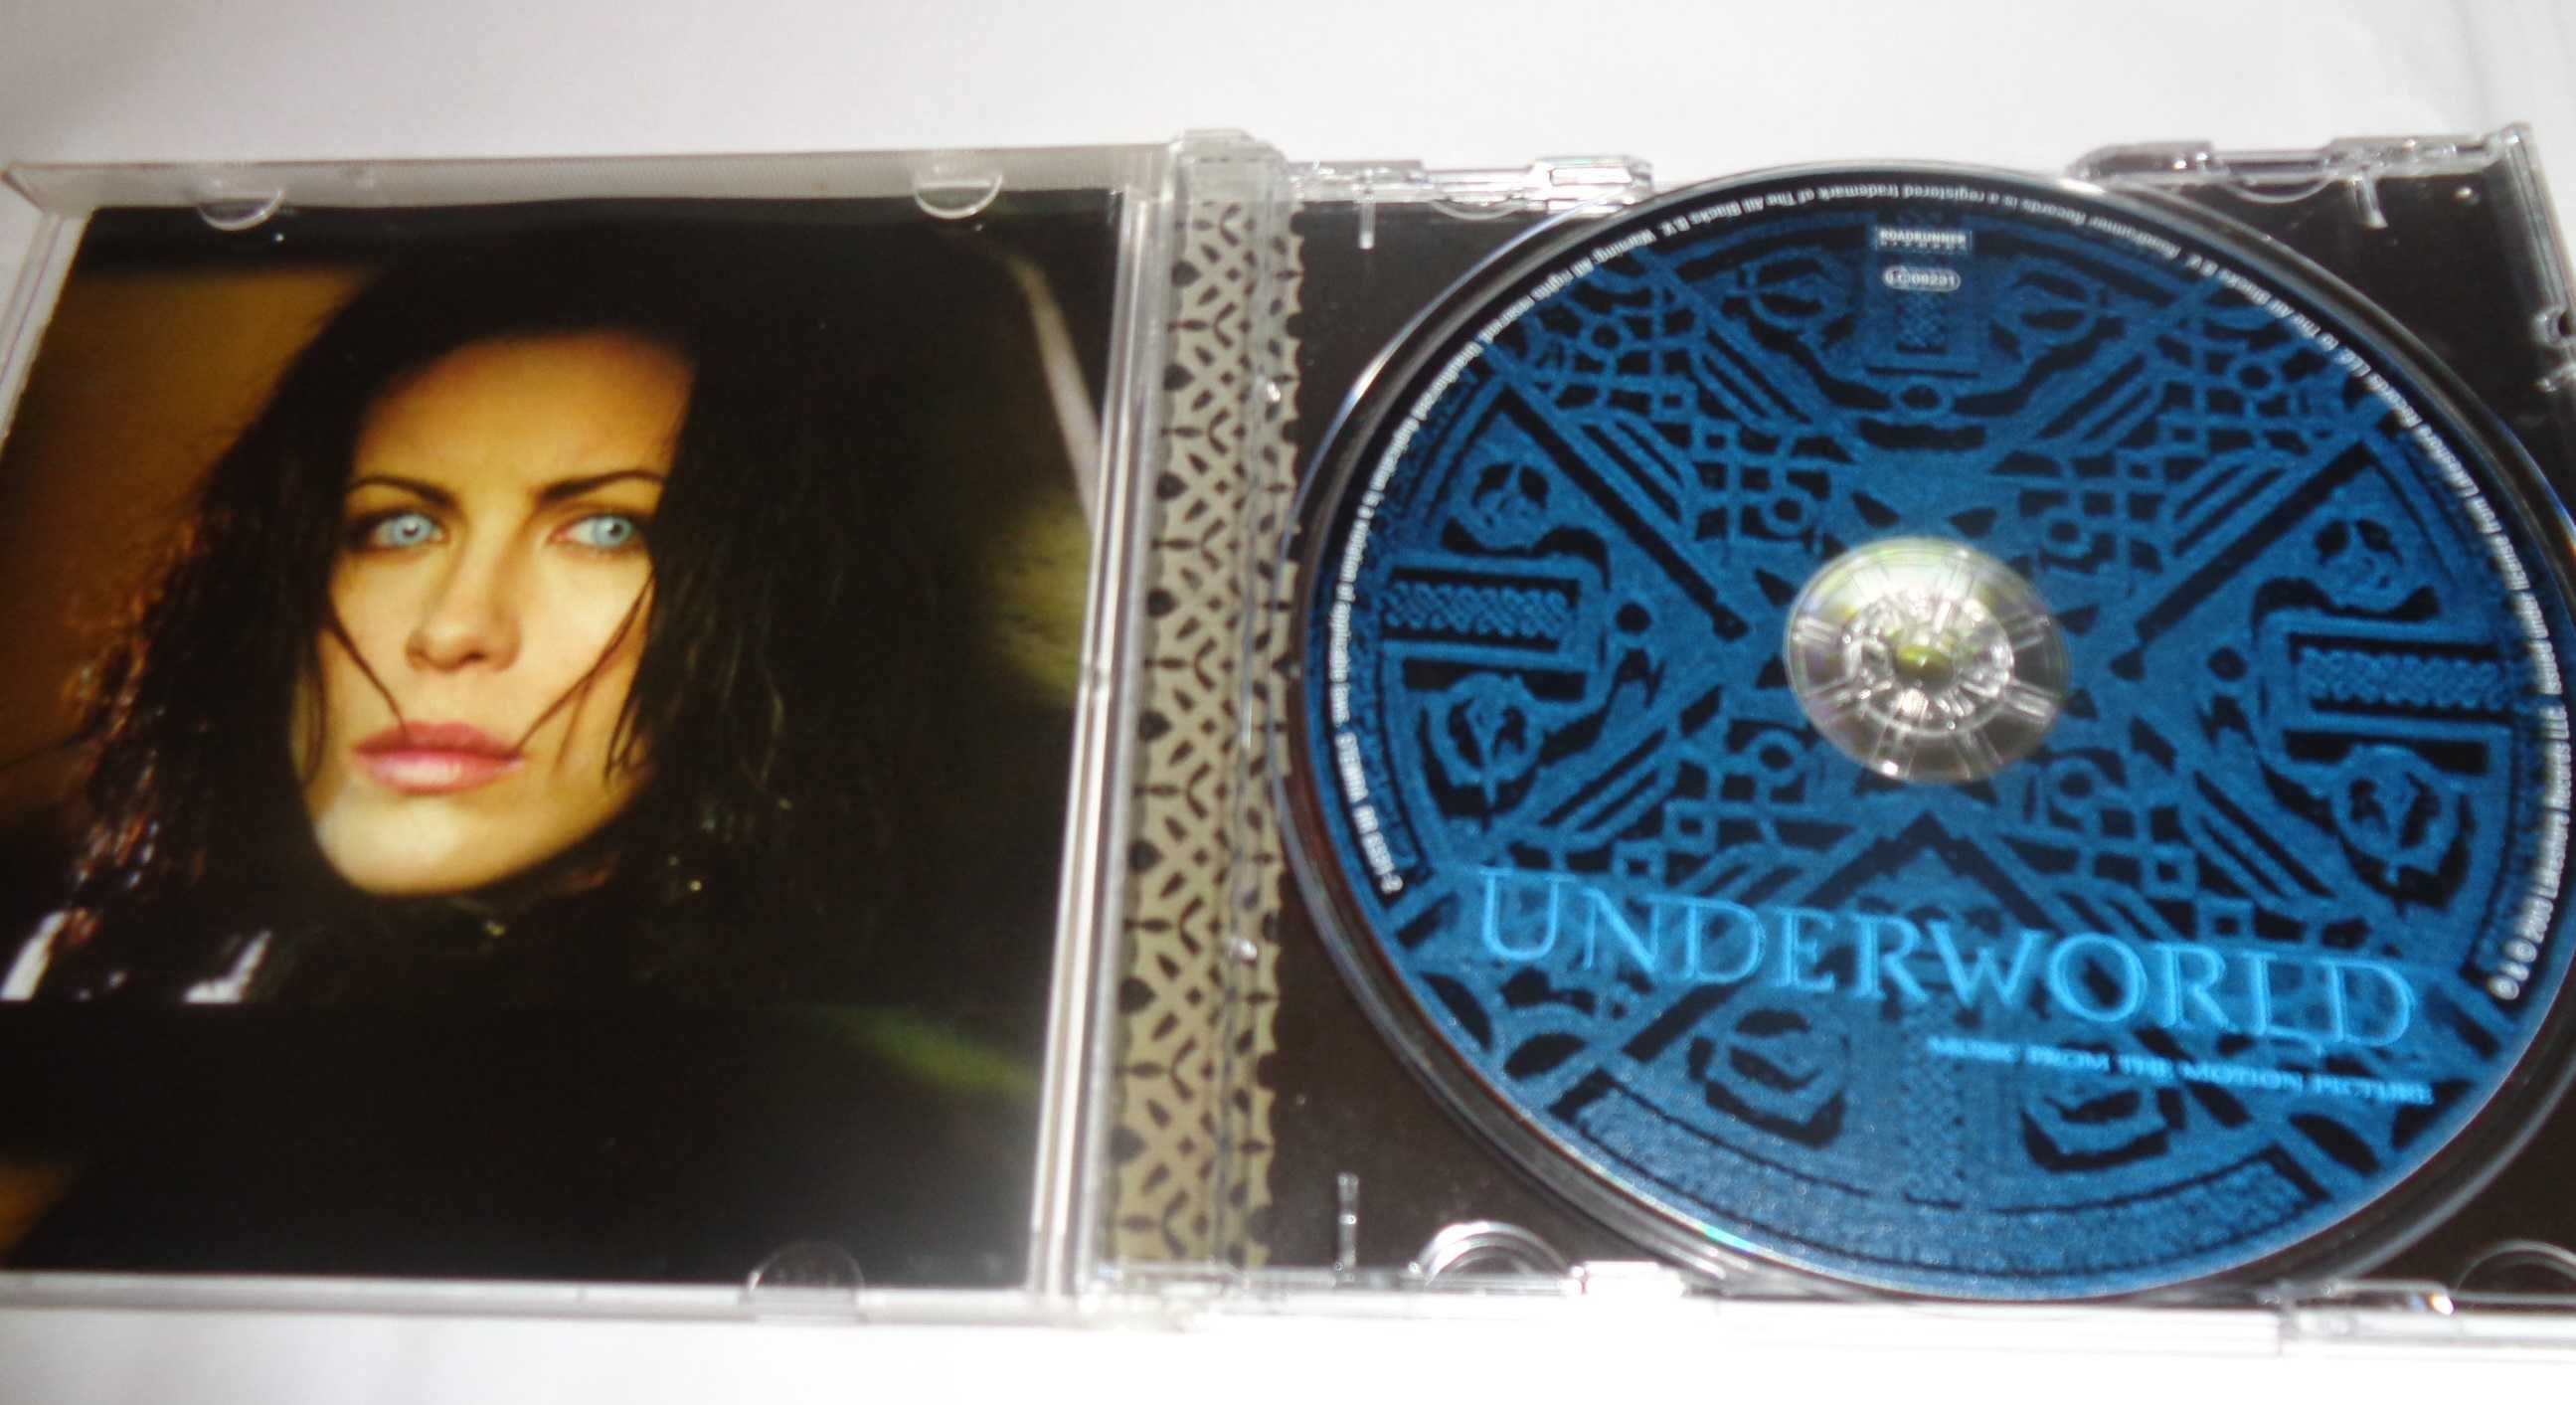 Underworld - soundtrack CD